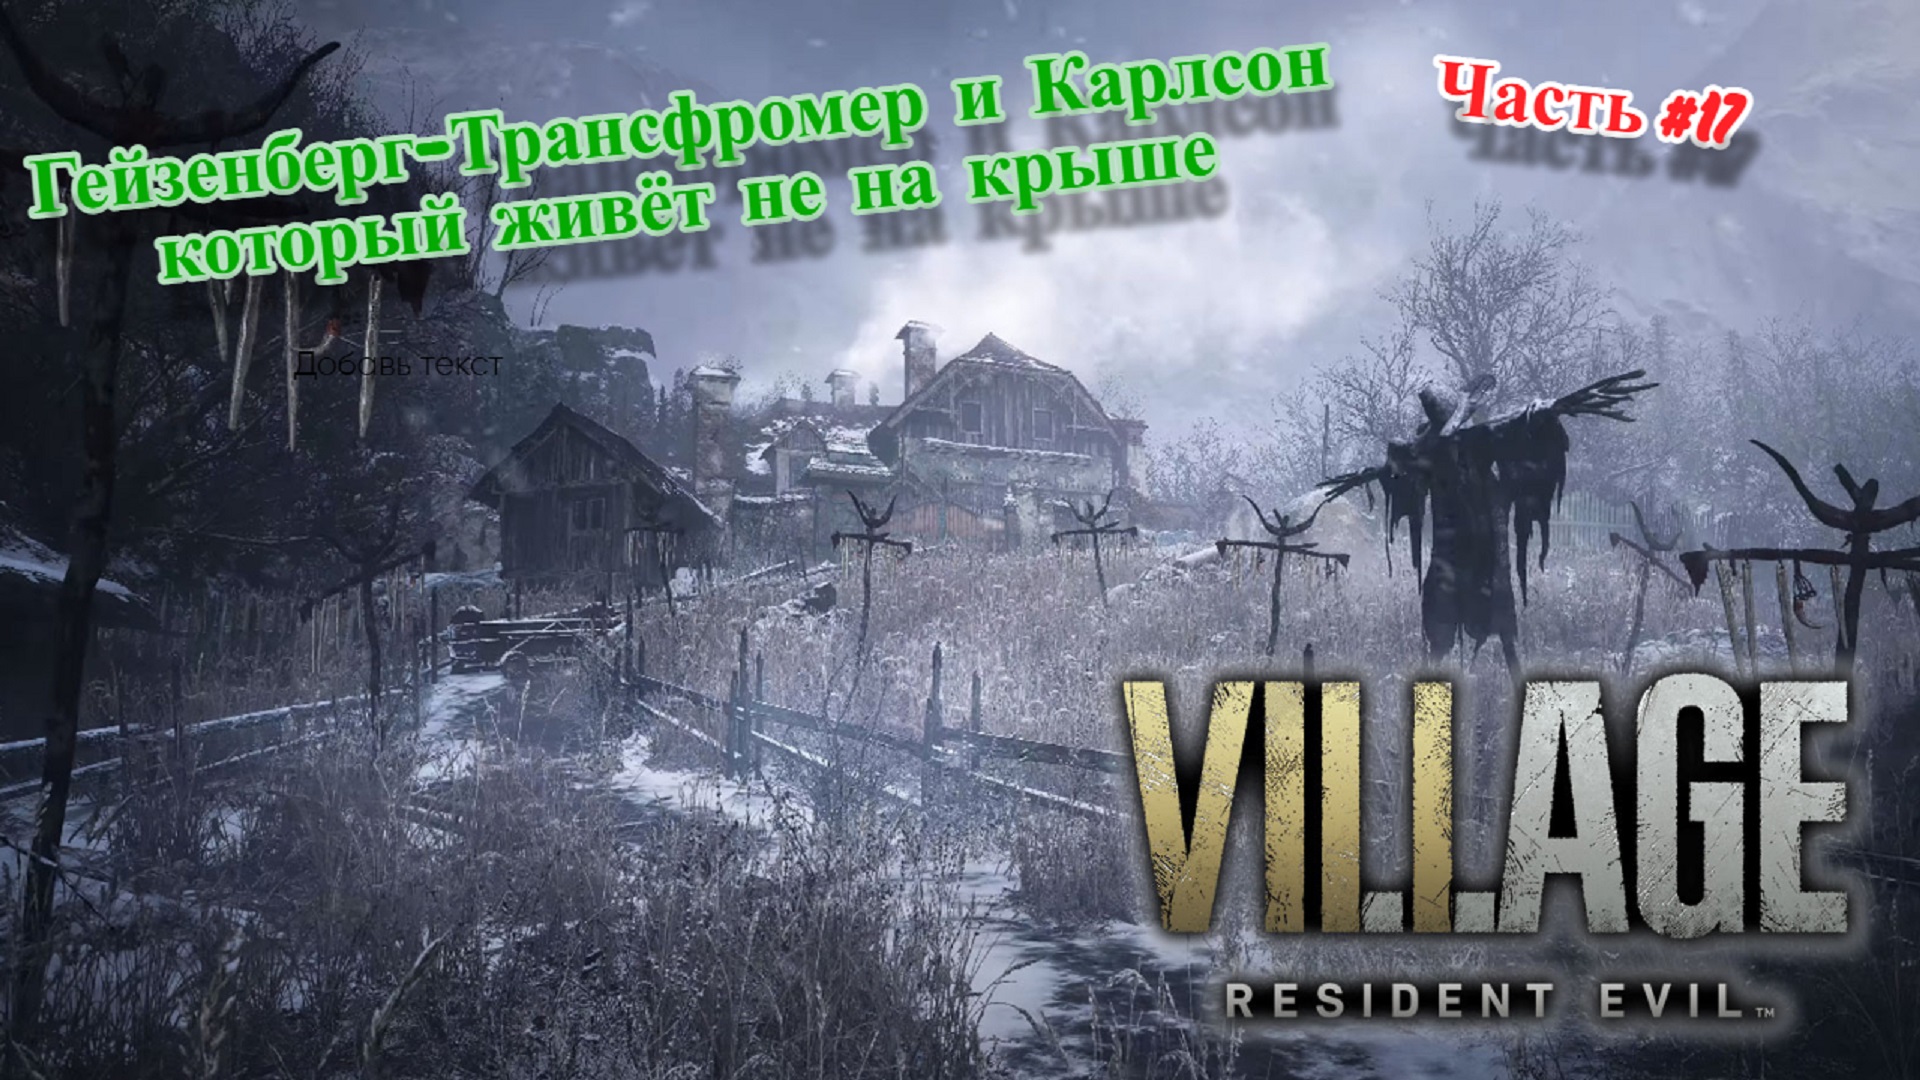 ?Resident Evil Village?Гейзенберг-Трансфромер и Карлсон который живёт не на крыше?Прохождение #17